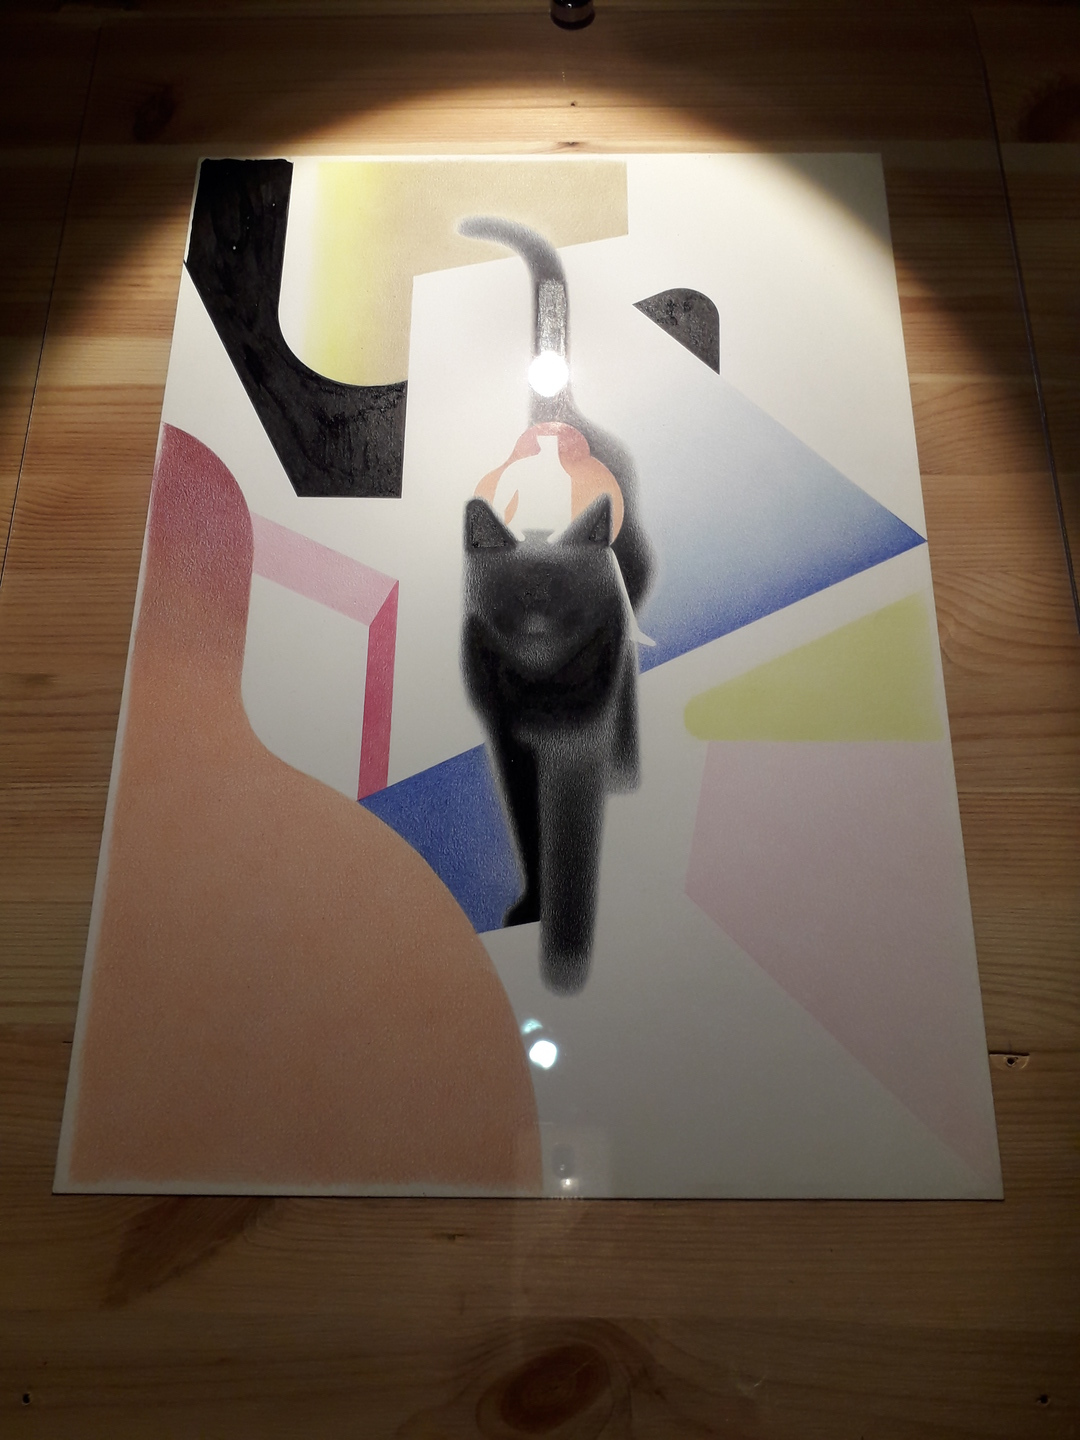 Image 1 : Illustration d'un chat avec des formes géométriques et des dégradés exécuté aux crayons de couleurs